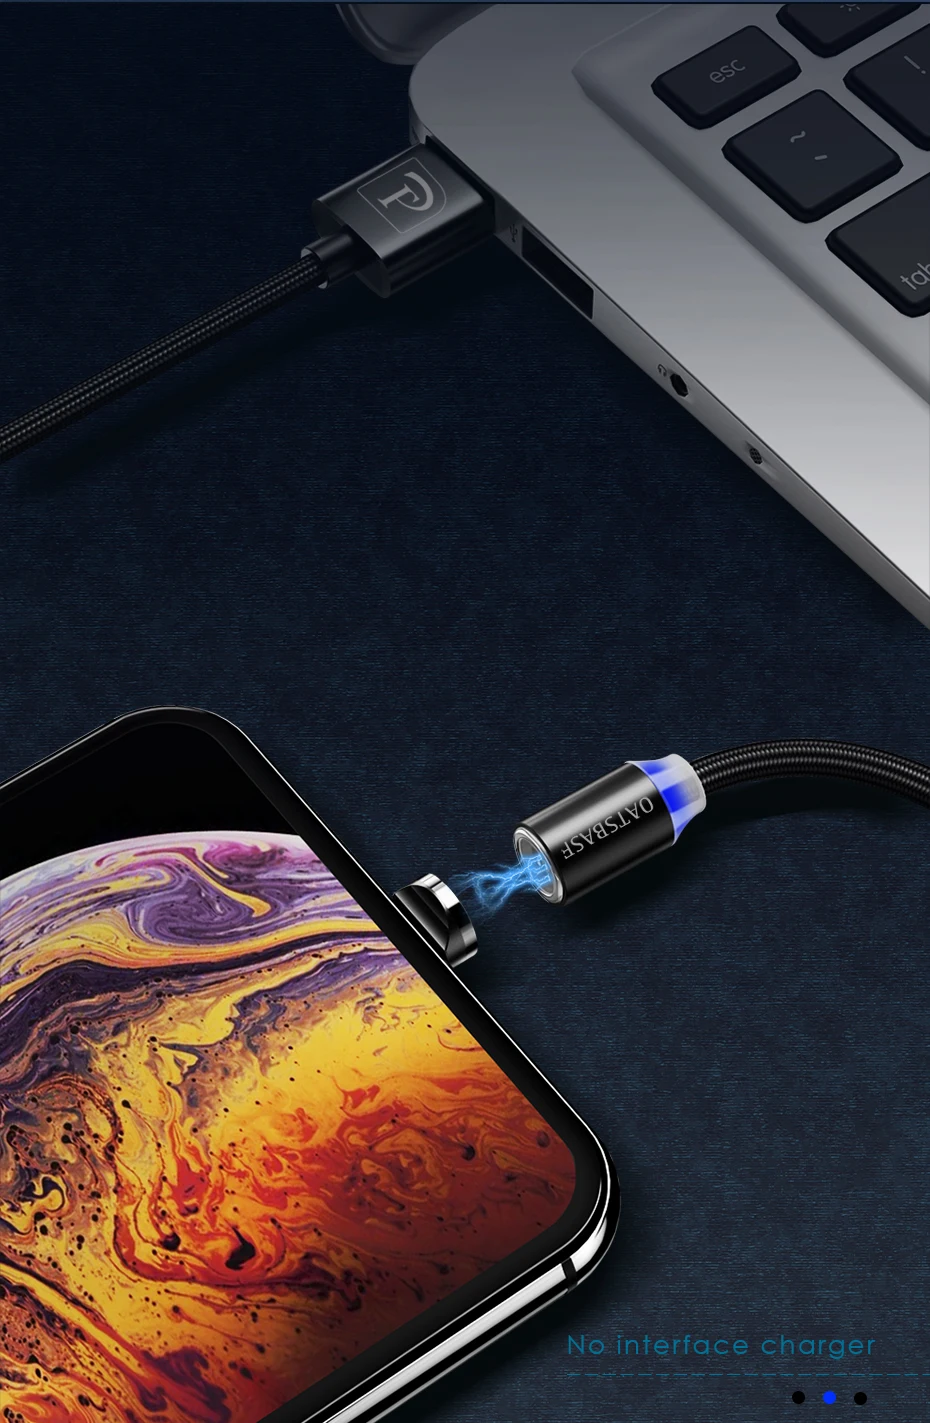 Магнитный кабель Micro usb type C кабель для iPhone xs samsung Быстрая зарядка Магнитный USB кабель для мобильного телефона